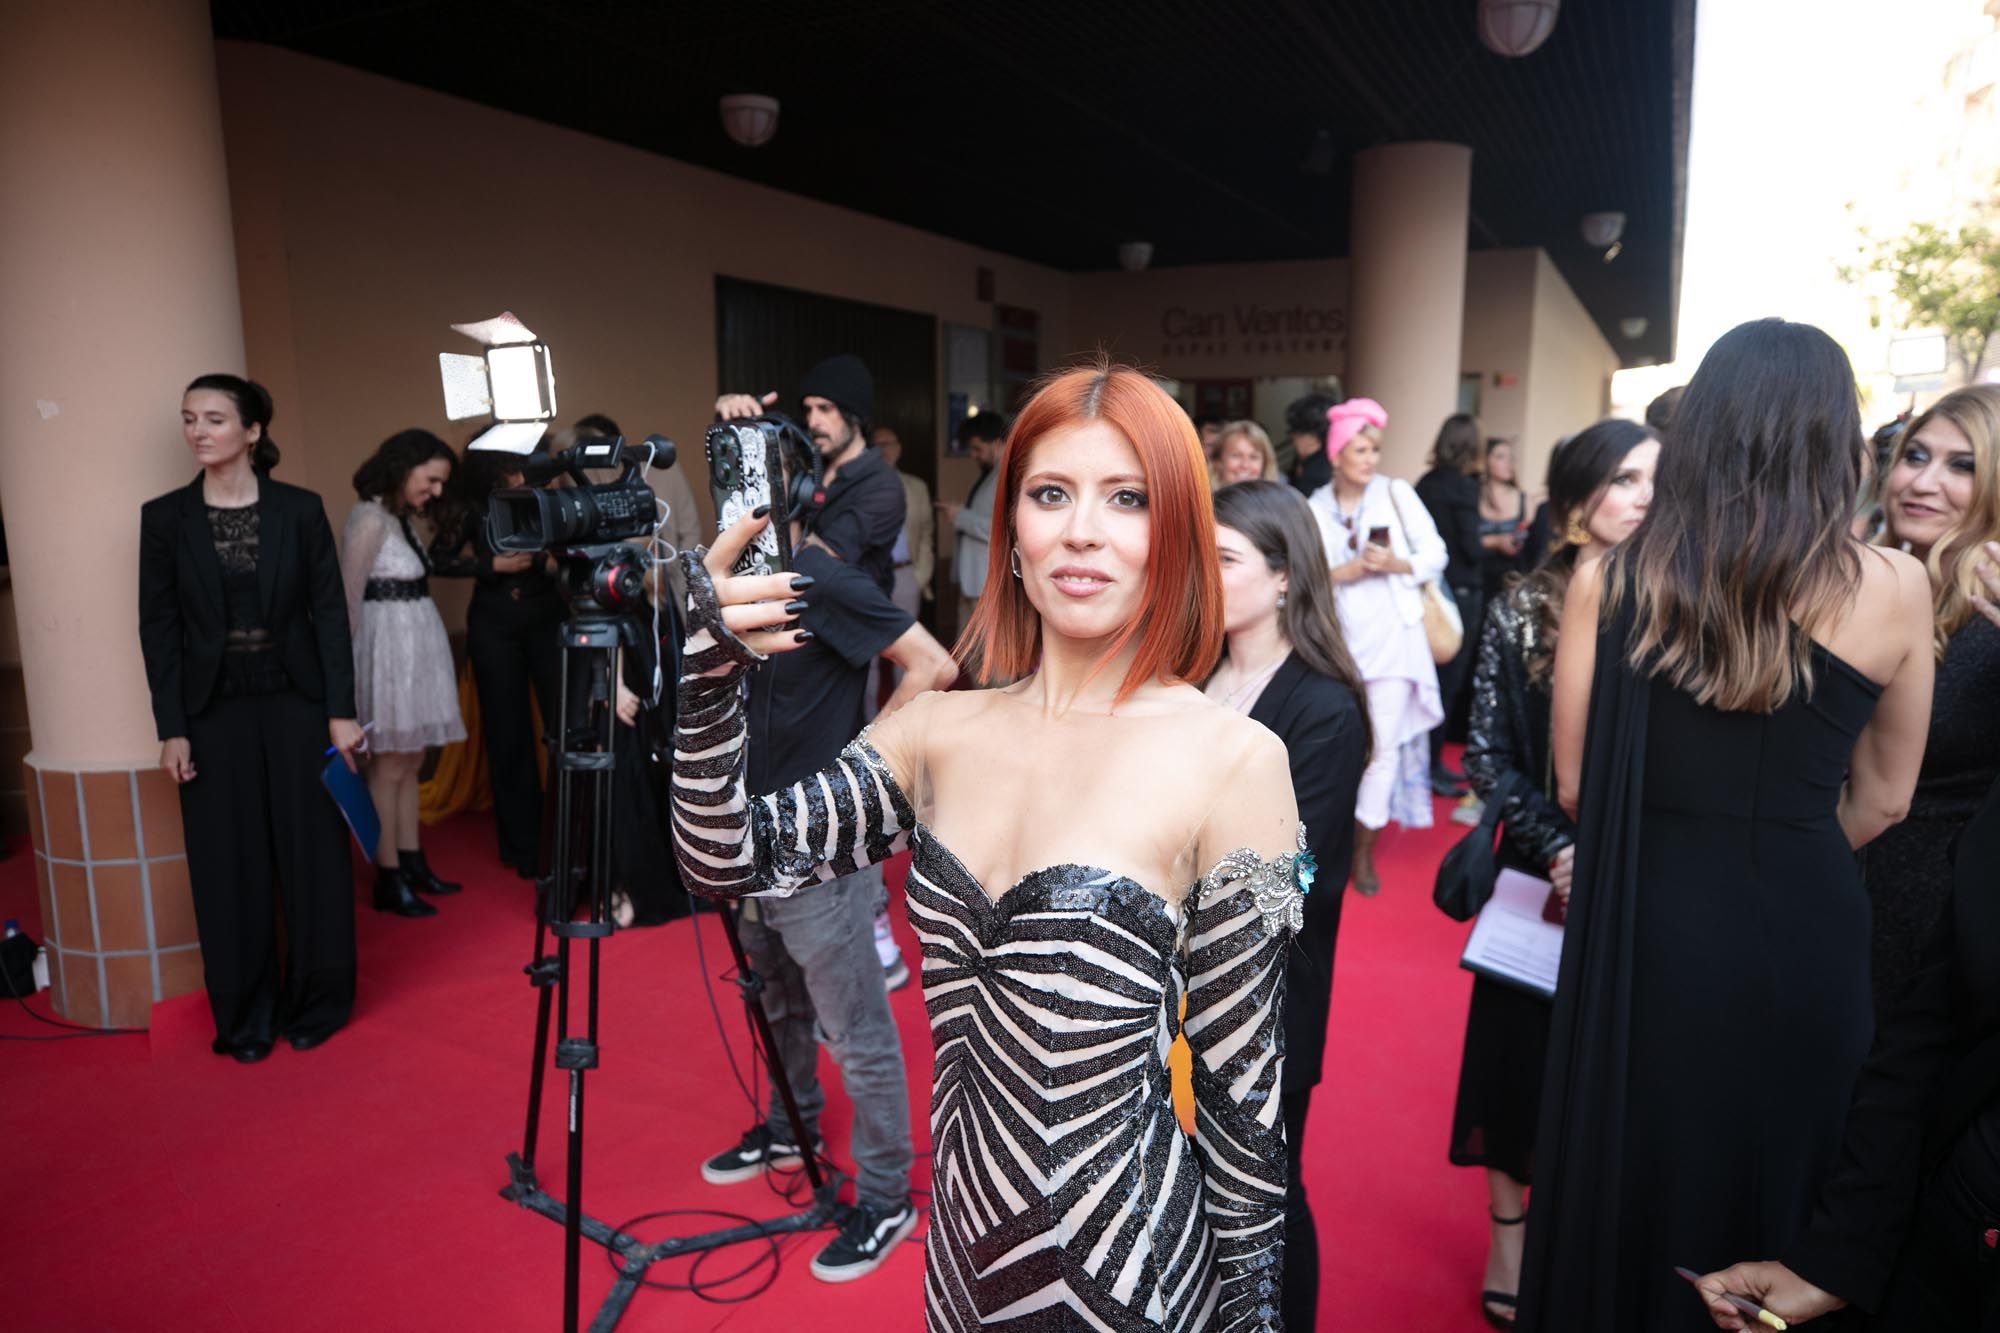 Premios Astarté: Ibiza, epicentro del audiovisual un año más